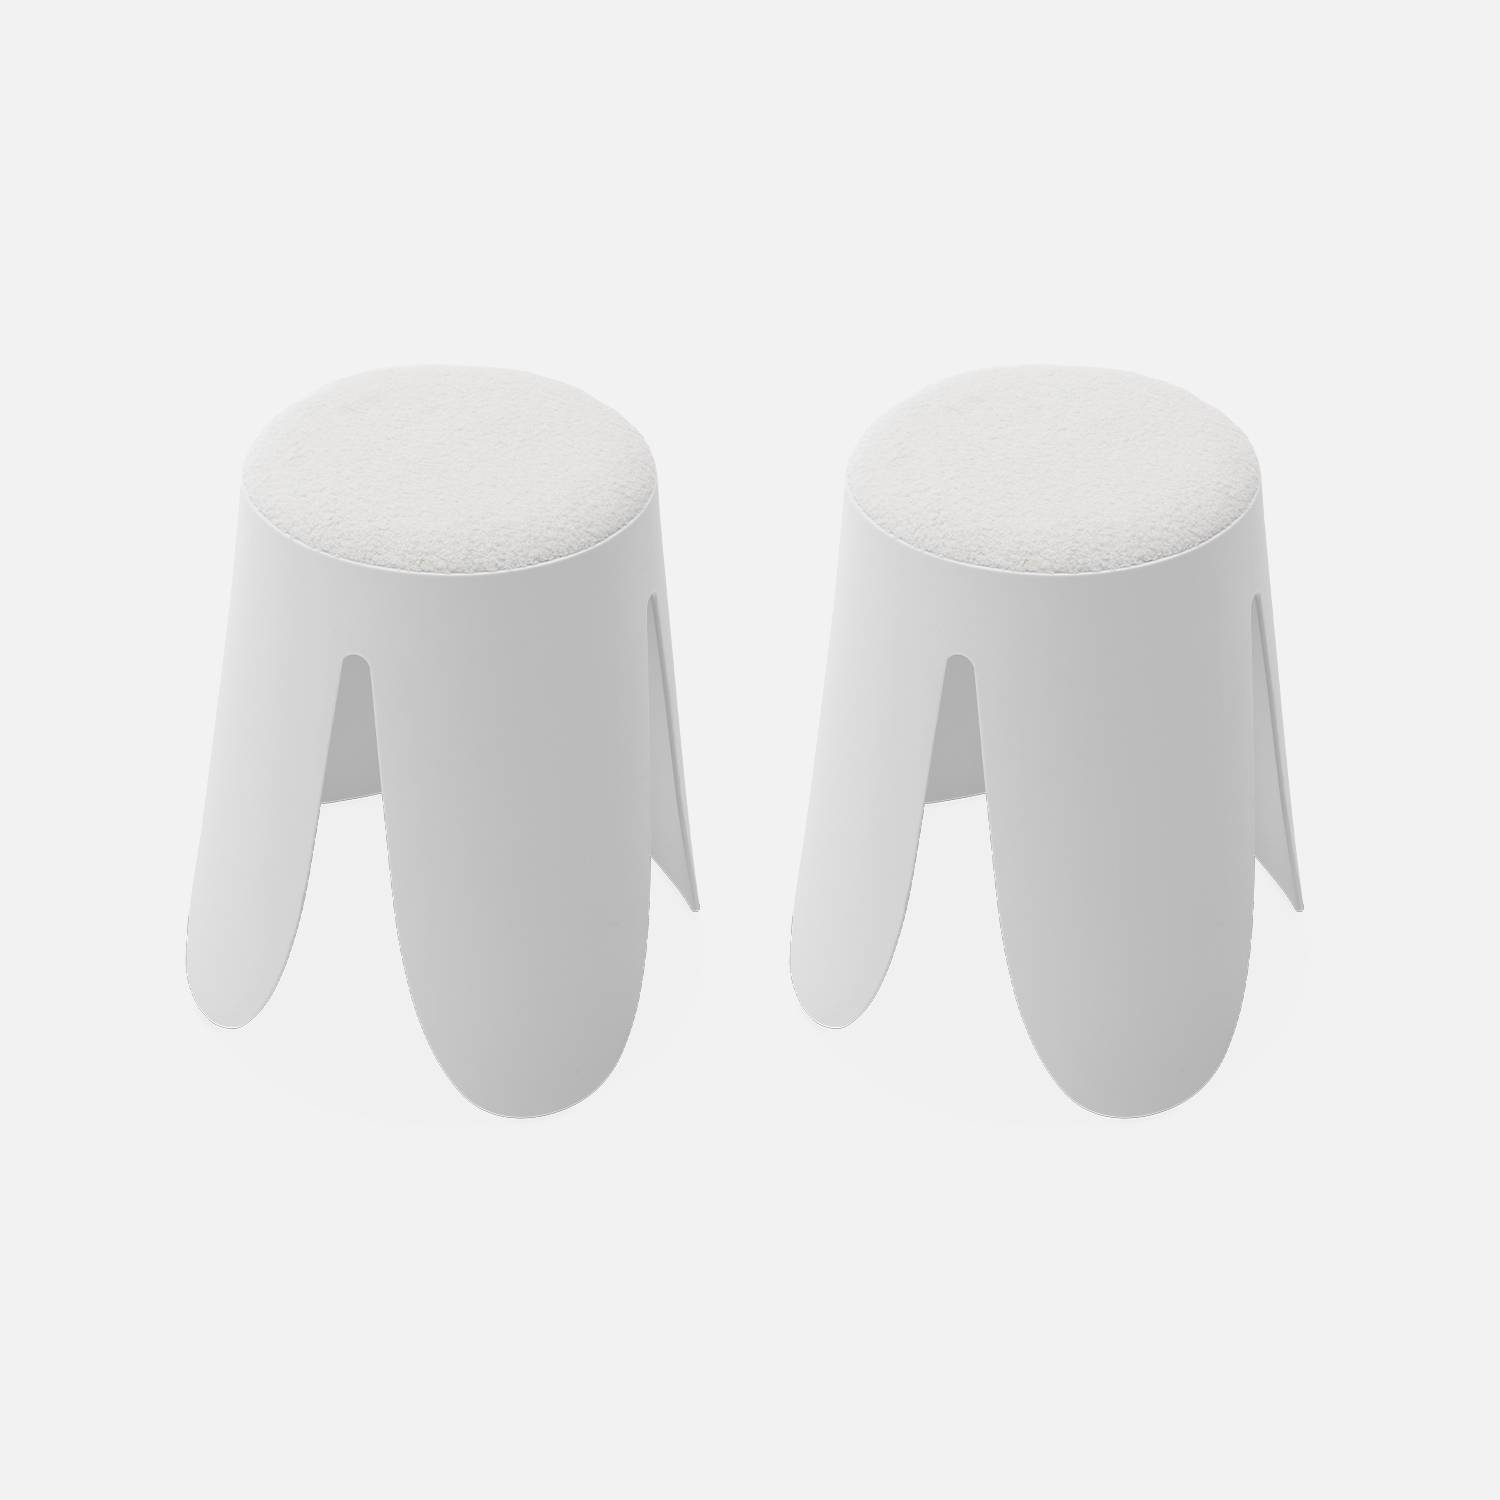  Conjunto de 2 taburetes apilables, asiento texturado | sweeek